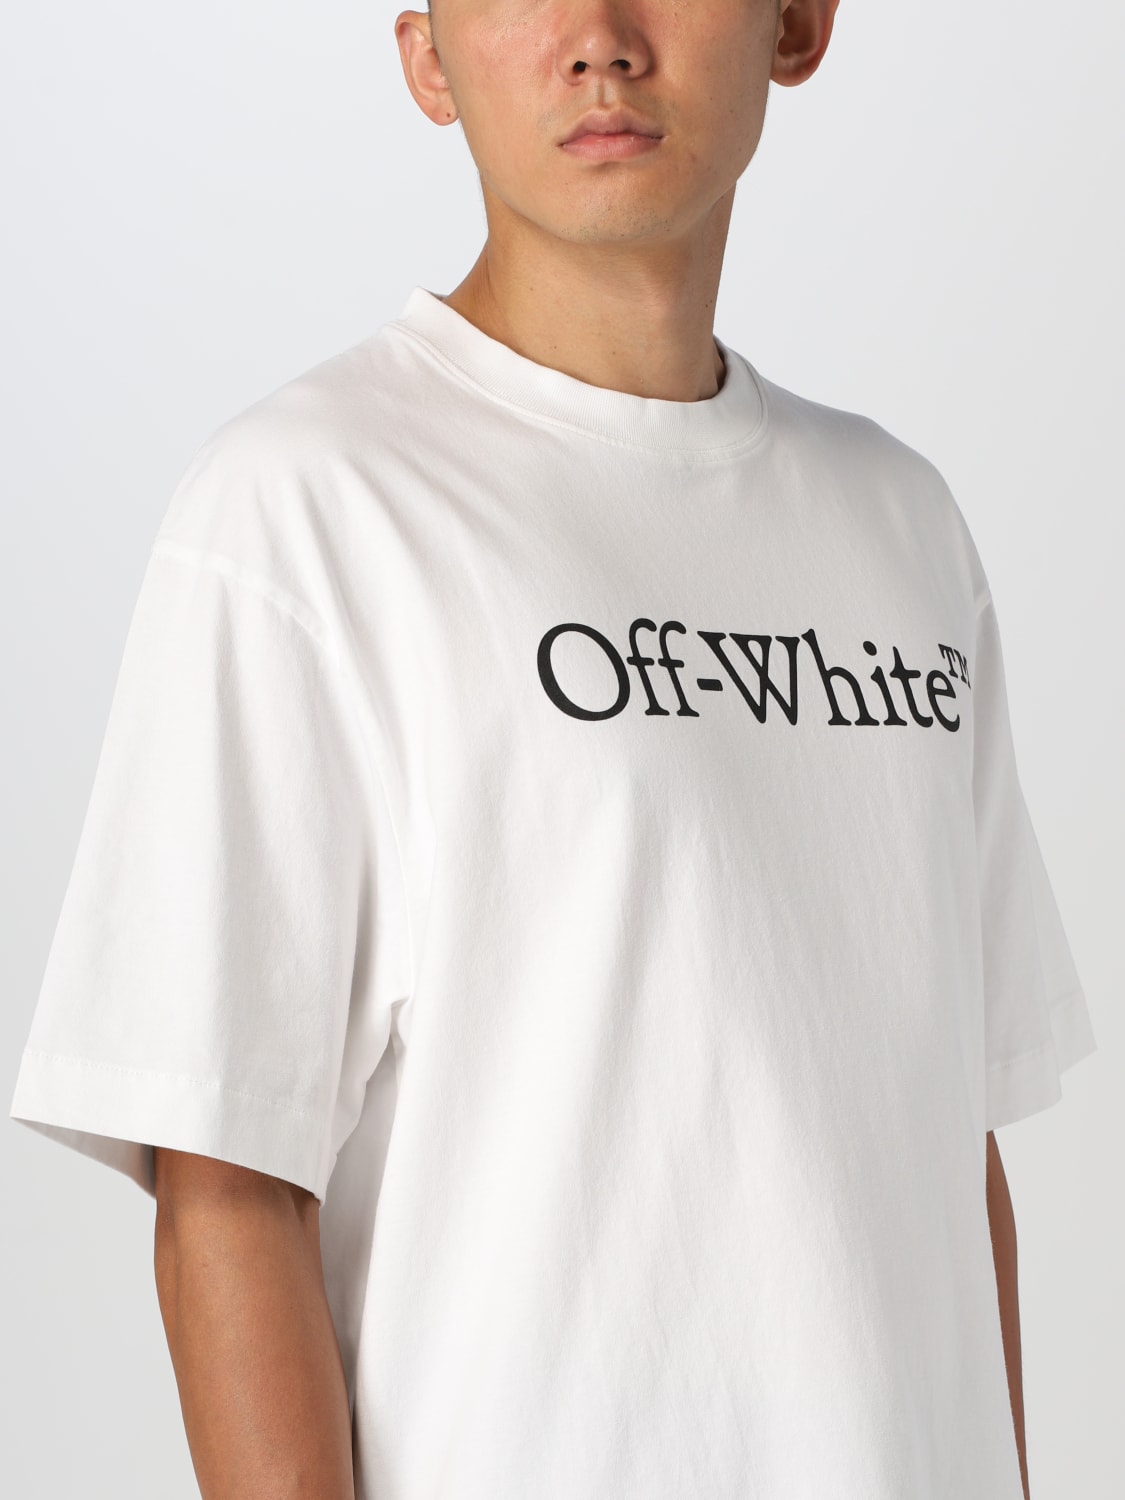 Tシャツ/カットソー(半袖/袖なし)off-white tee tシャツ - Tシャツ